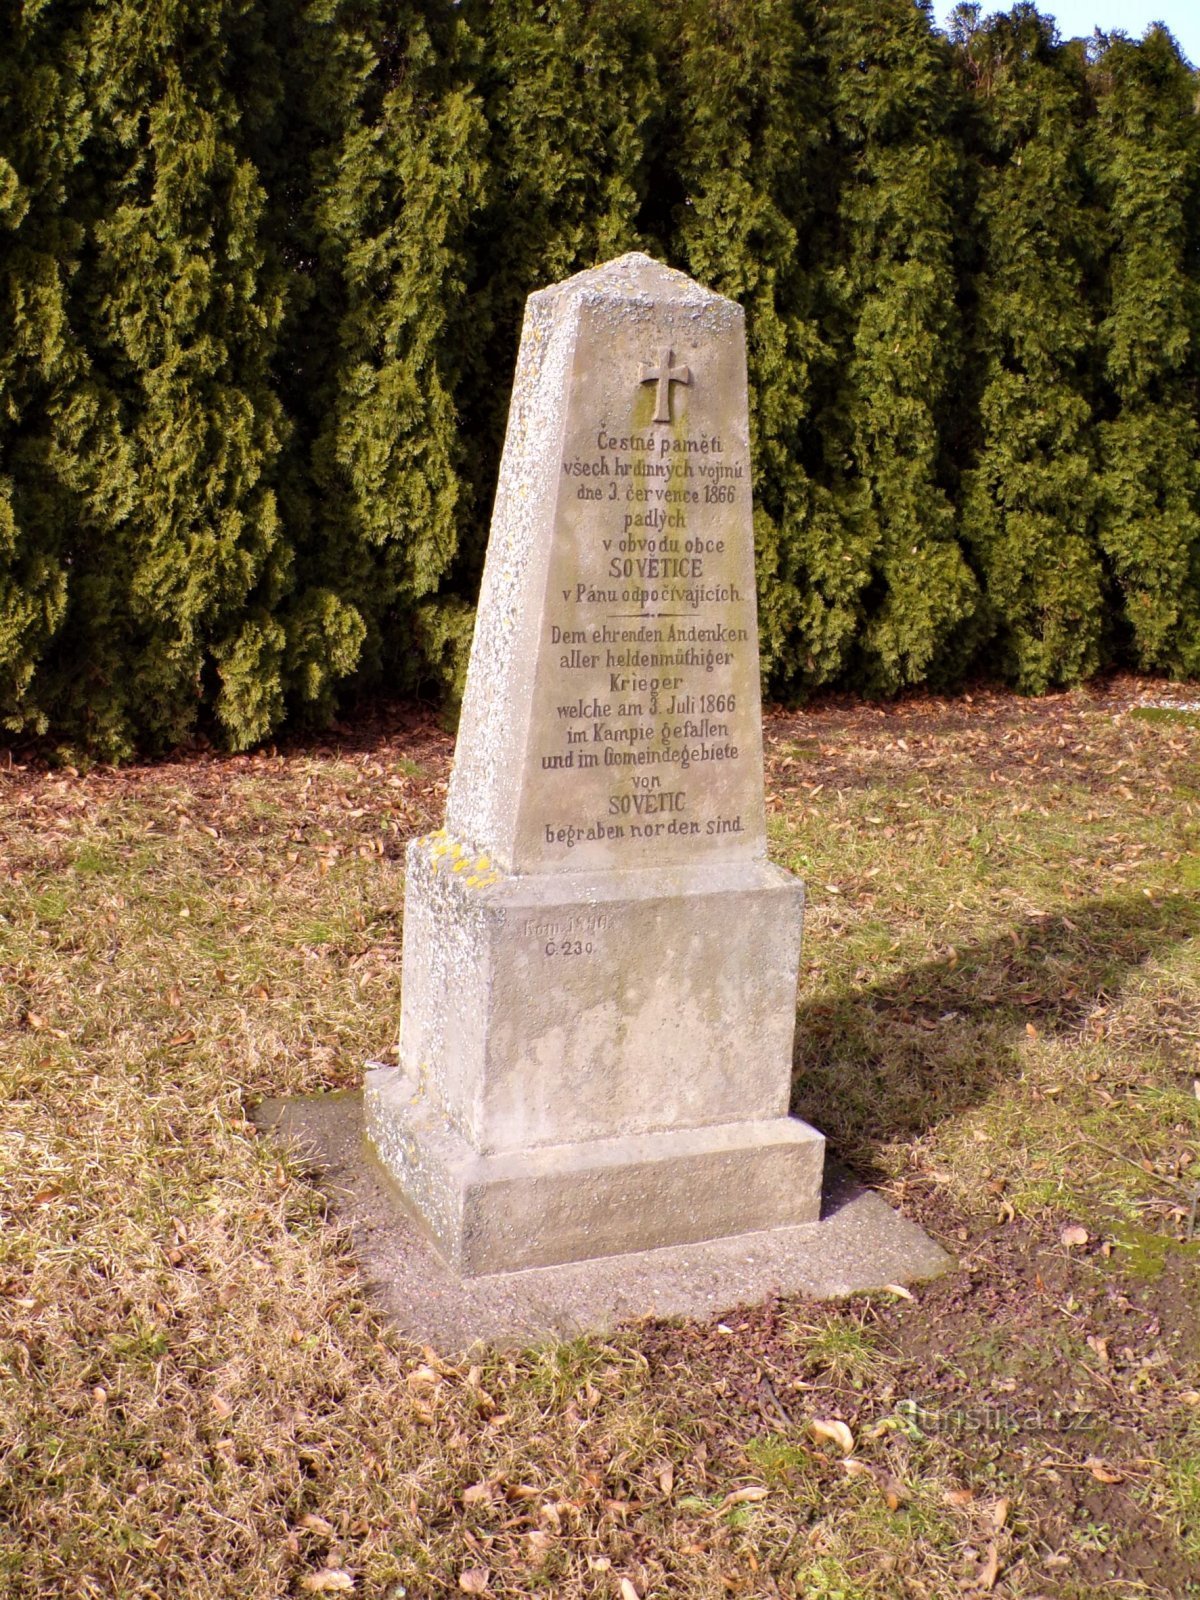 Памятник погибшим в прусско-австрийской войне 1866 г. (СССР, 24.2.2021)